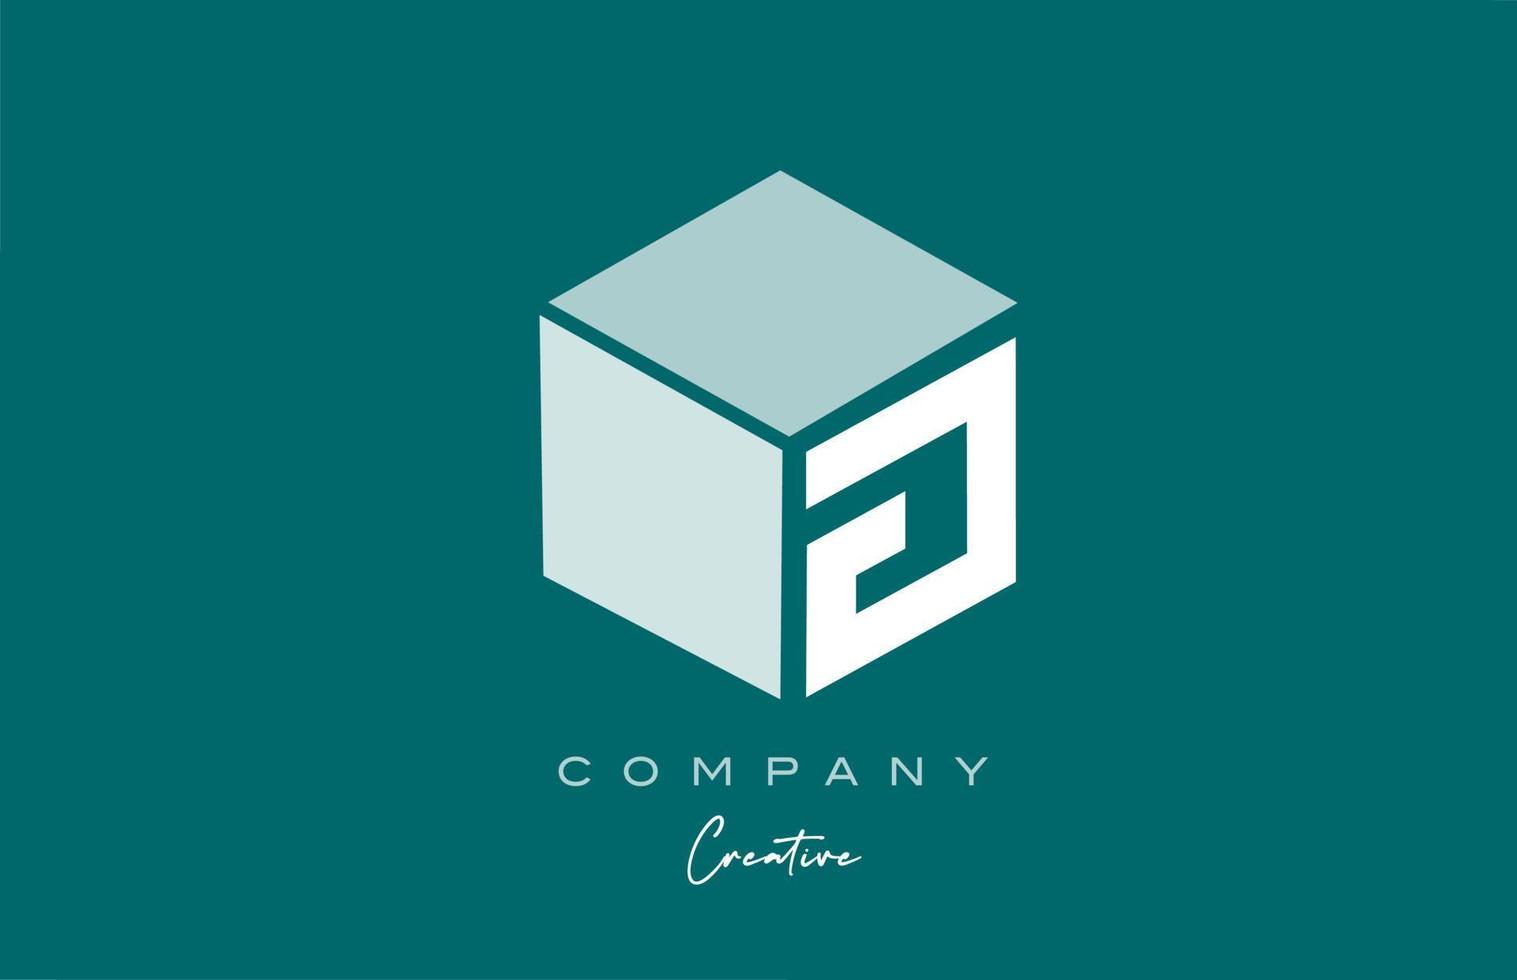 Würfel g drei Buchstaben Würfel Alphabet Buchstaben Logo Icon Design mit grüner Pastellfarbe. kreative Designvorlage für Unternehmen und Unternehmen vektor